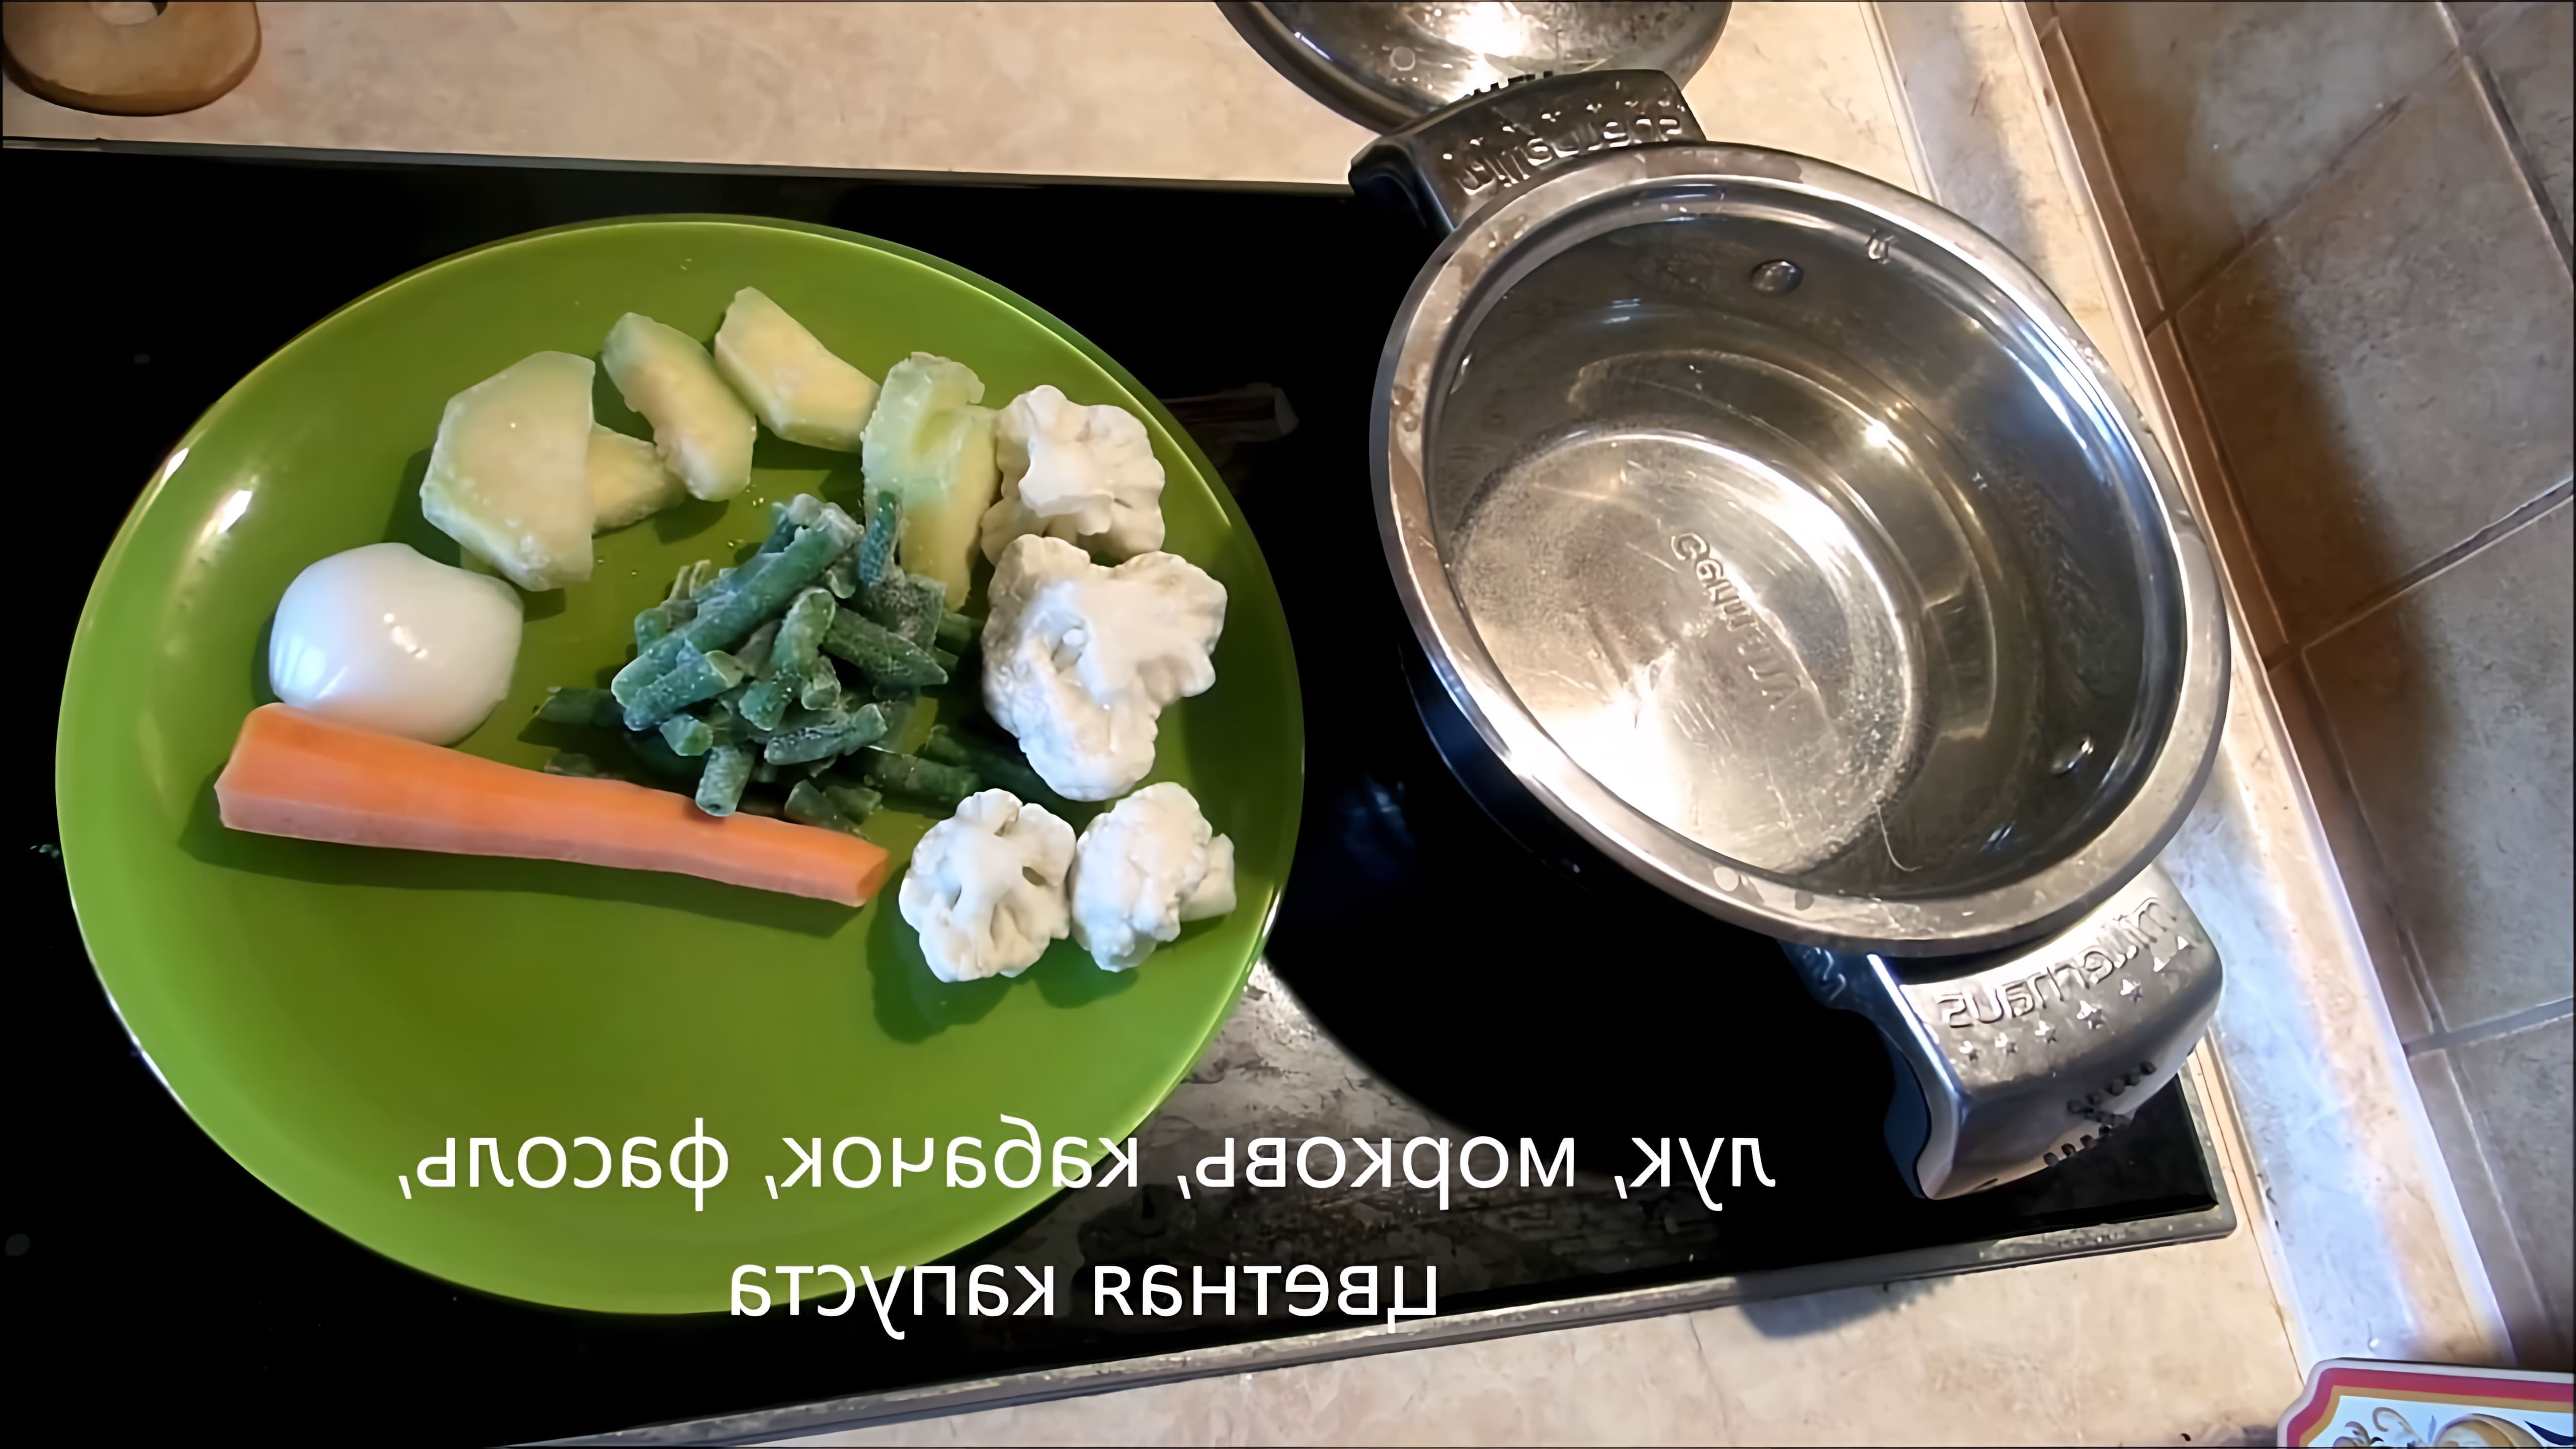 В этом видео-ролике будут представлены 3 рецепта супов, которые идеально подходят для питания годовалого ребенка